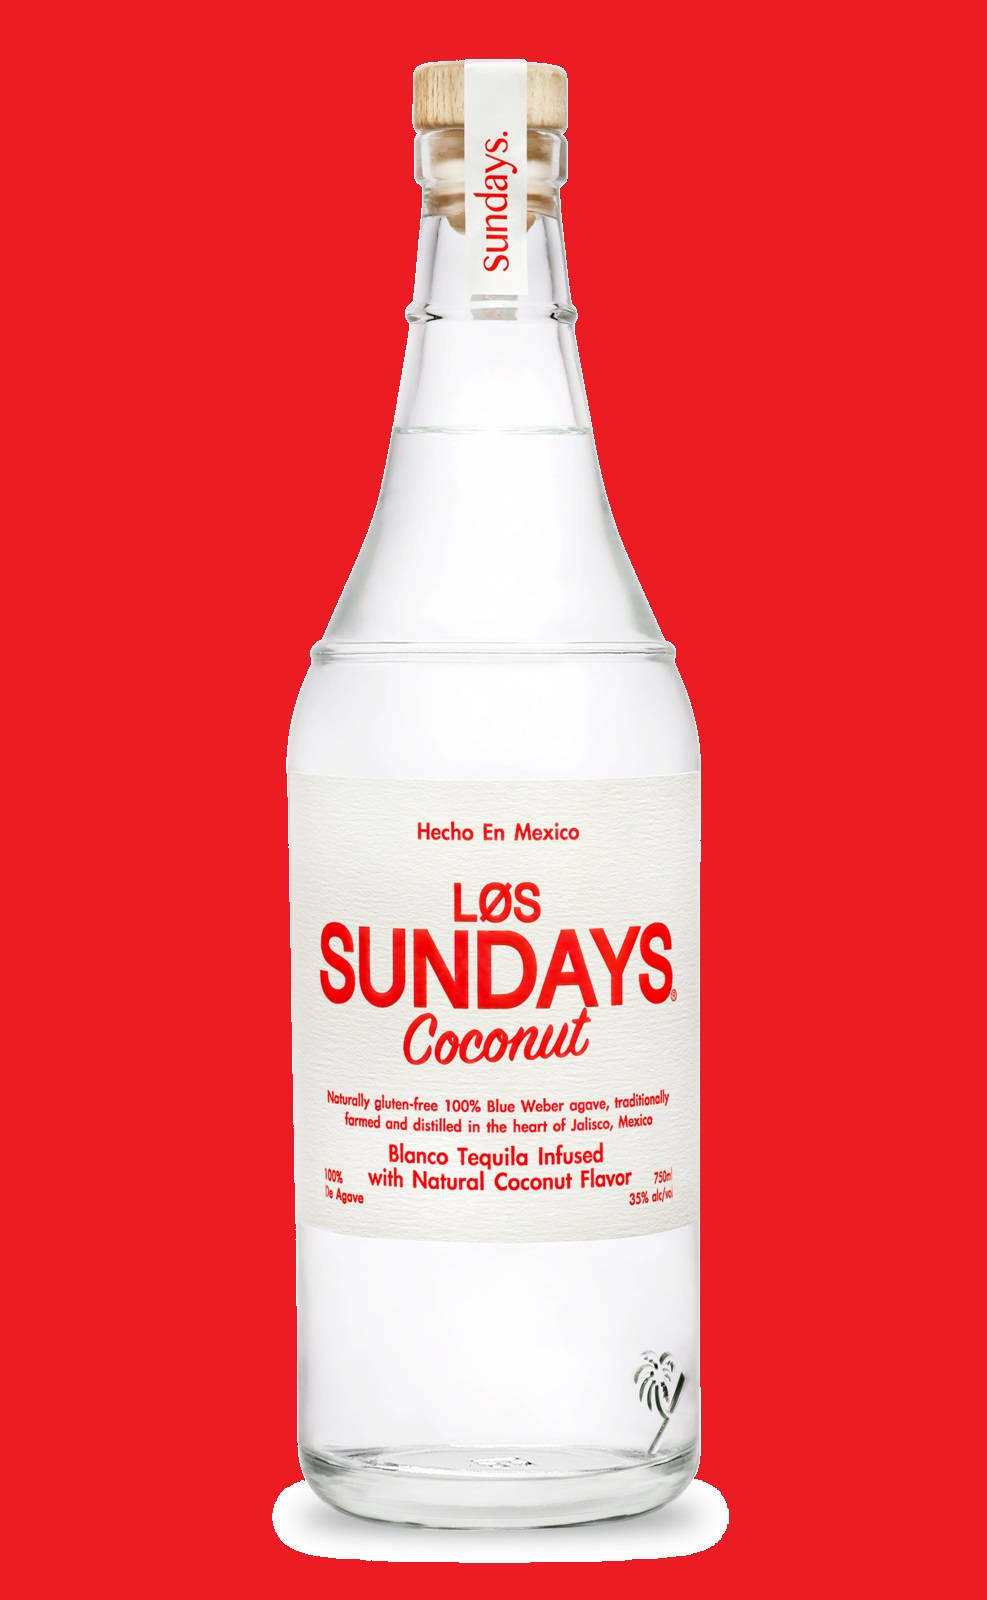 Los Sundays Coconut Flavor Wallpaper